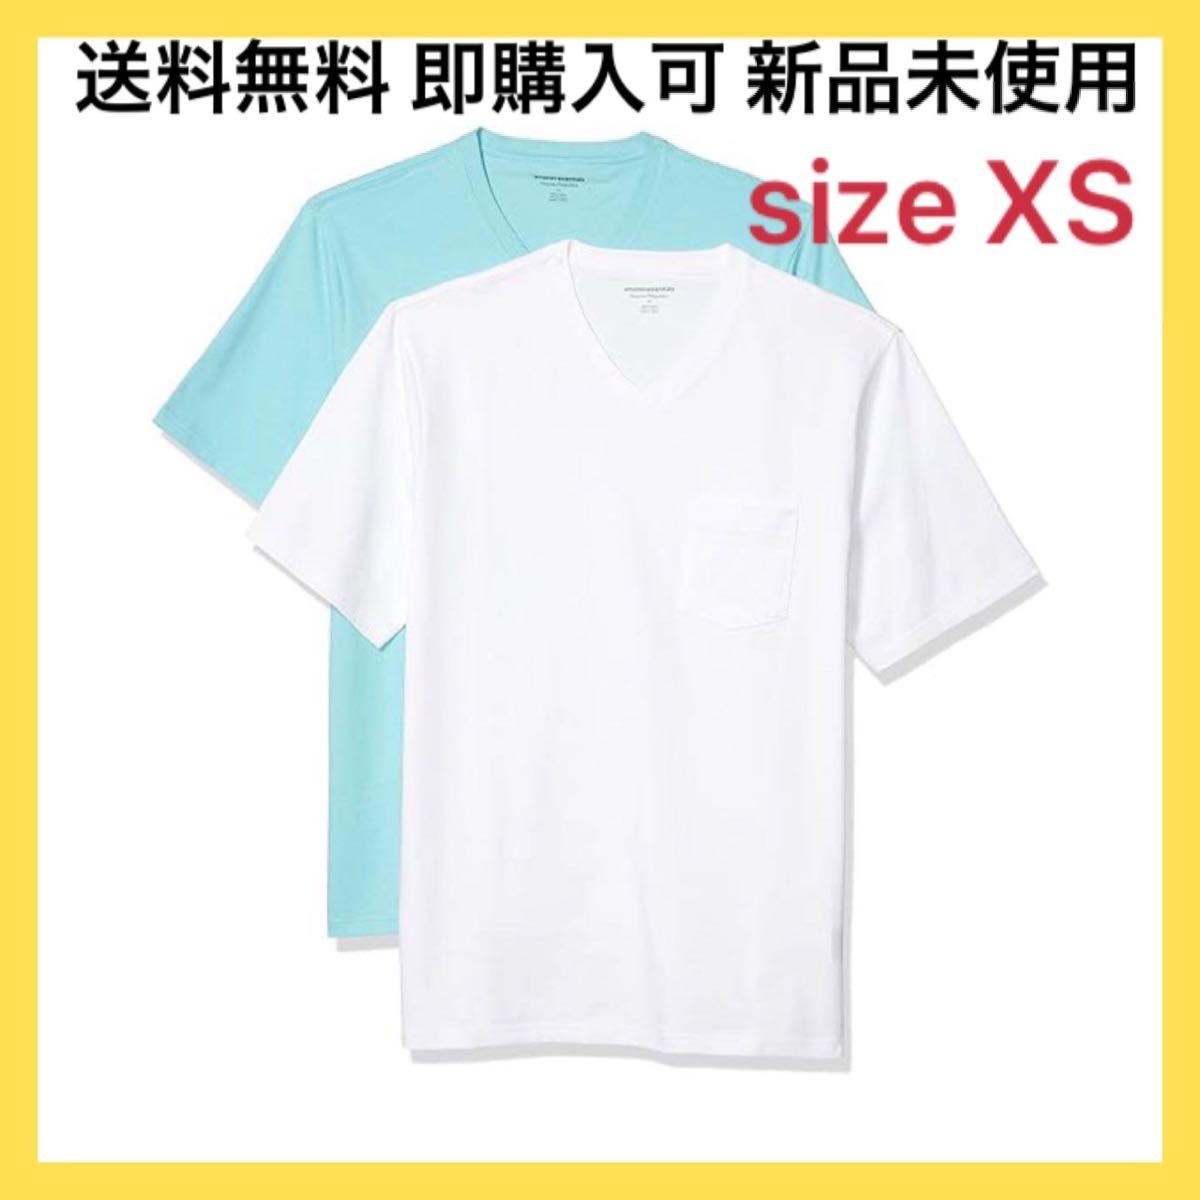 2枚組 Tシャツ ポケット付き Vネック 半袖 夏 セット 無地 白 水色 XS